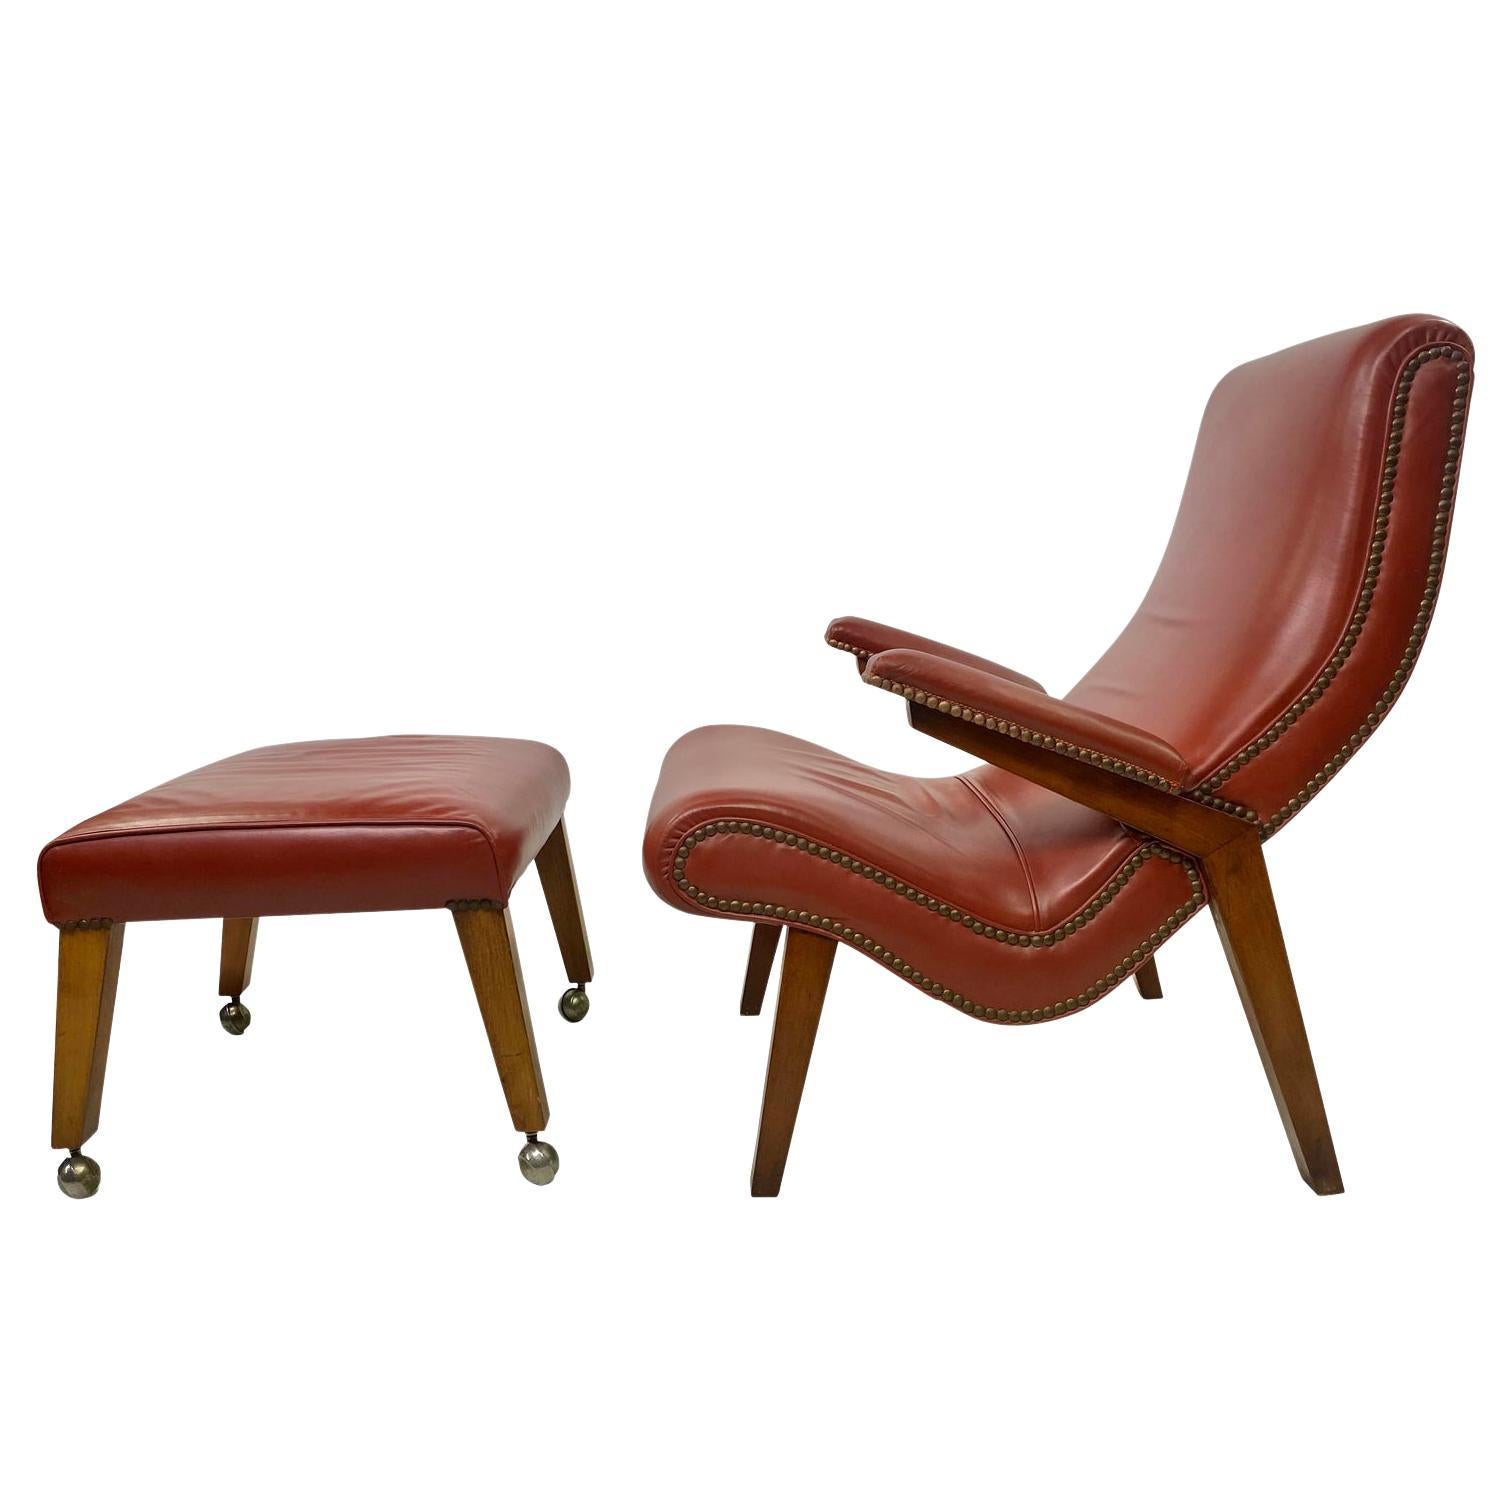 1950s Scandinavian Modern Lounge Chair with Ottoman